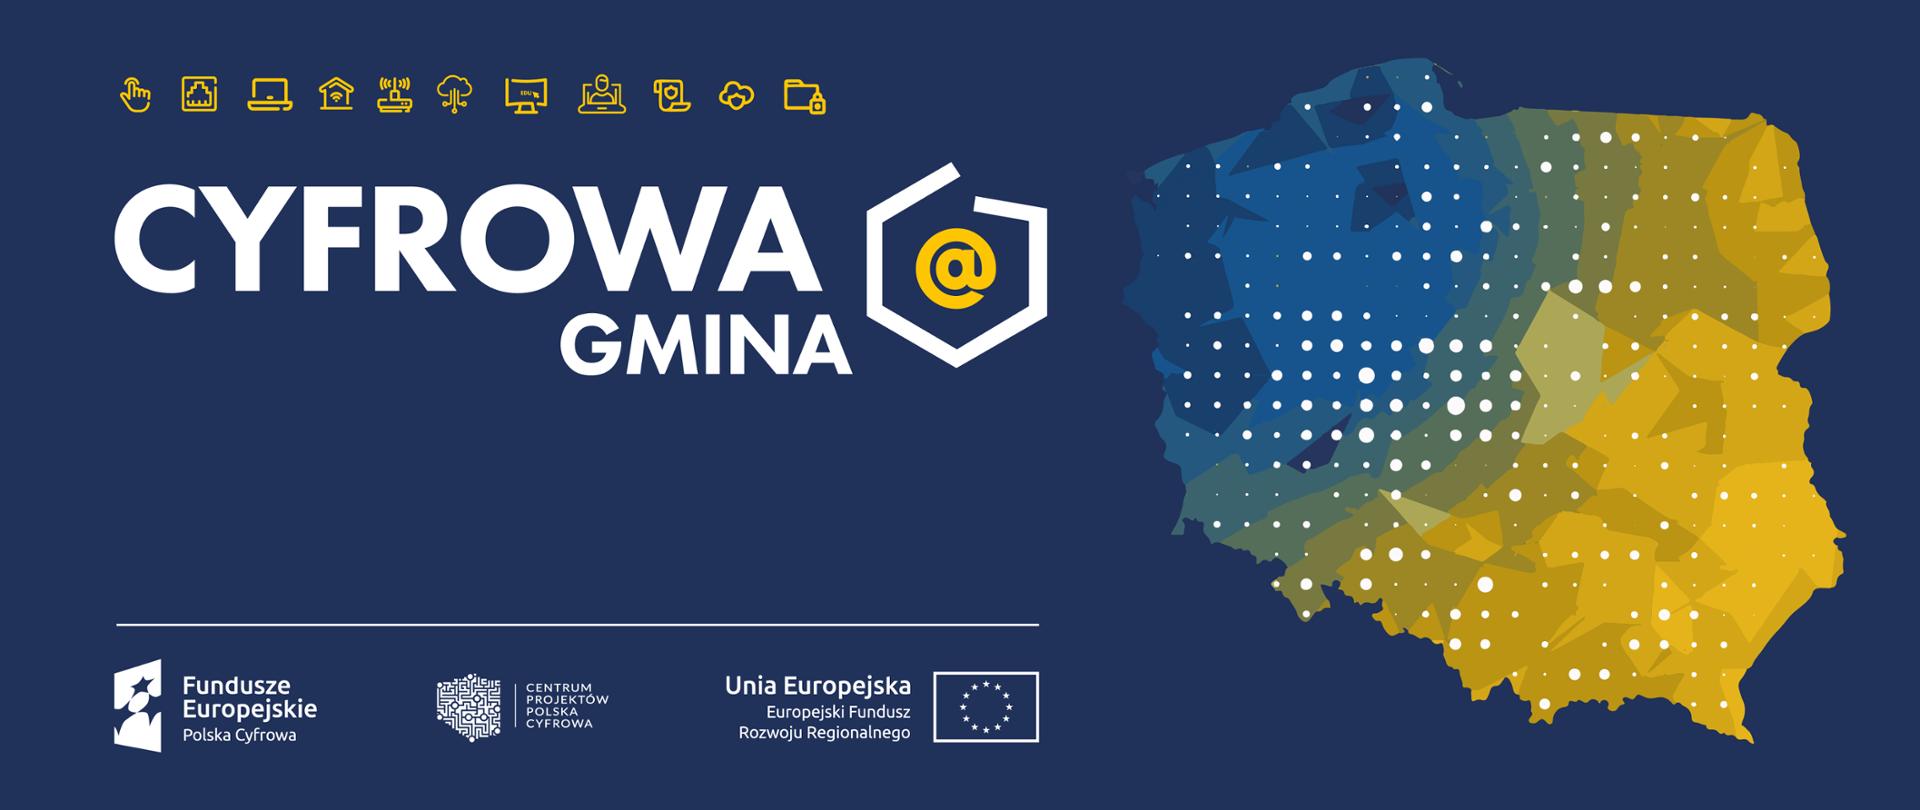 Baner Cyfrowa Gmina. Logociąg: Fundusze Europejskie Polska Cyfrowa, Centrum Projektów Polska Cyfrowa oraz Unia Europejska Europejski Fundusz Rozwoju Regionalnego.